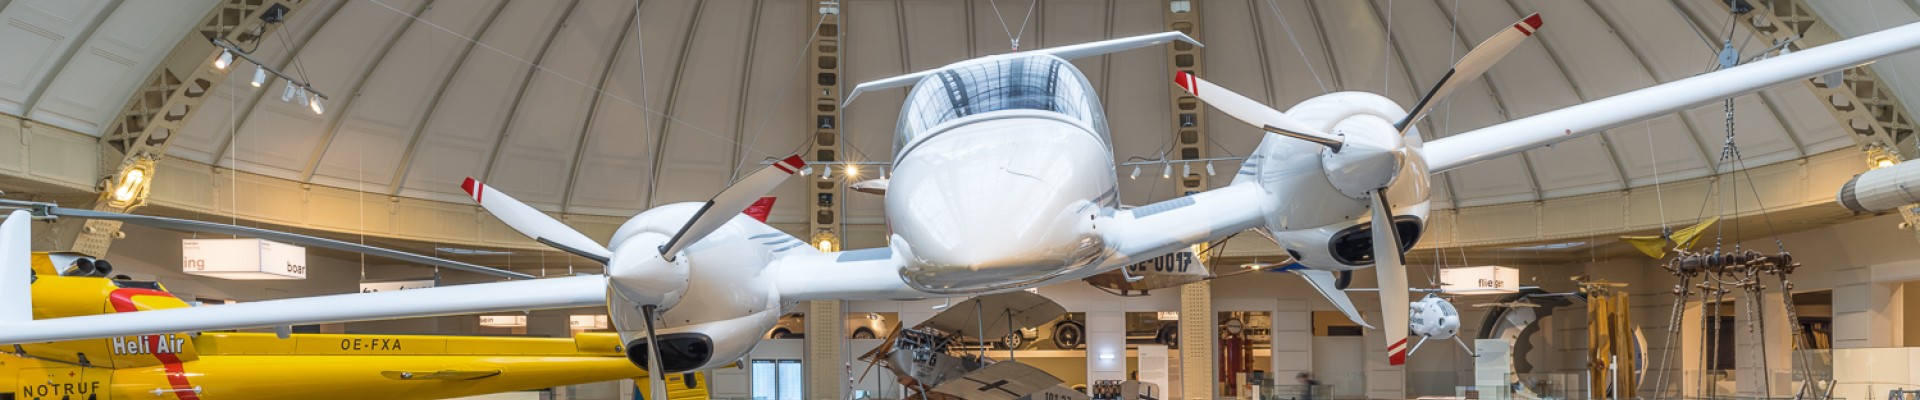 : Das Propellerfugzeug "Diamond DA42" in der Ausstellung "Mobilität"